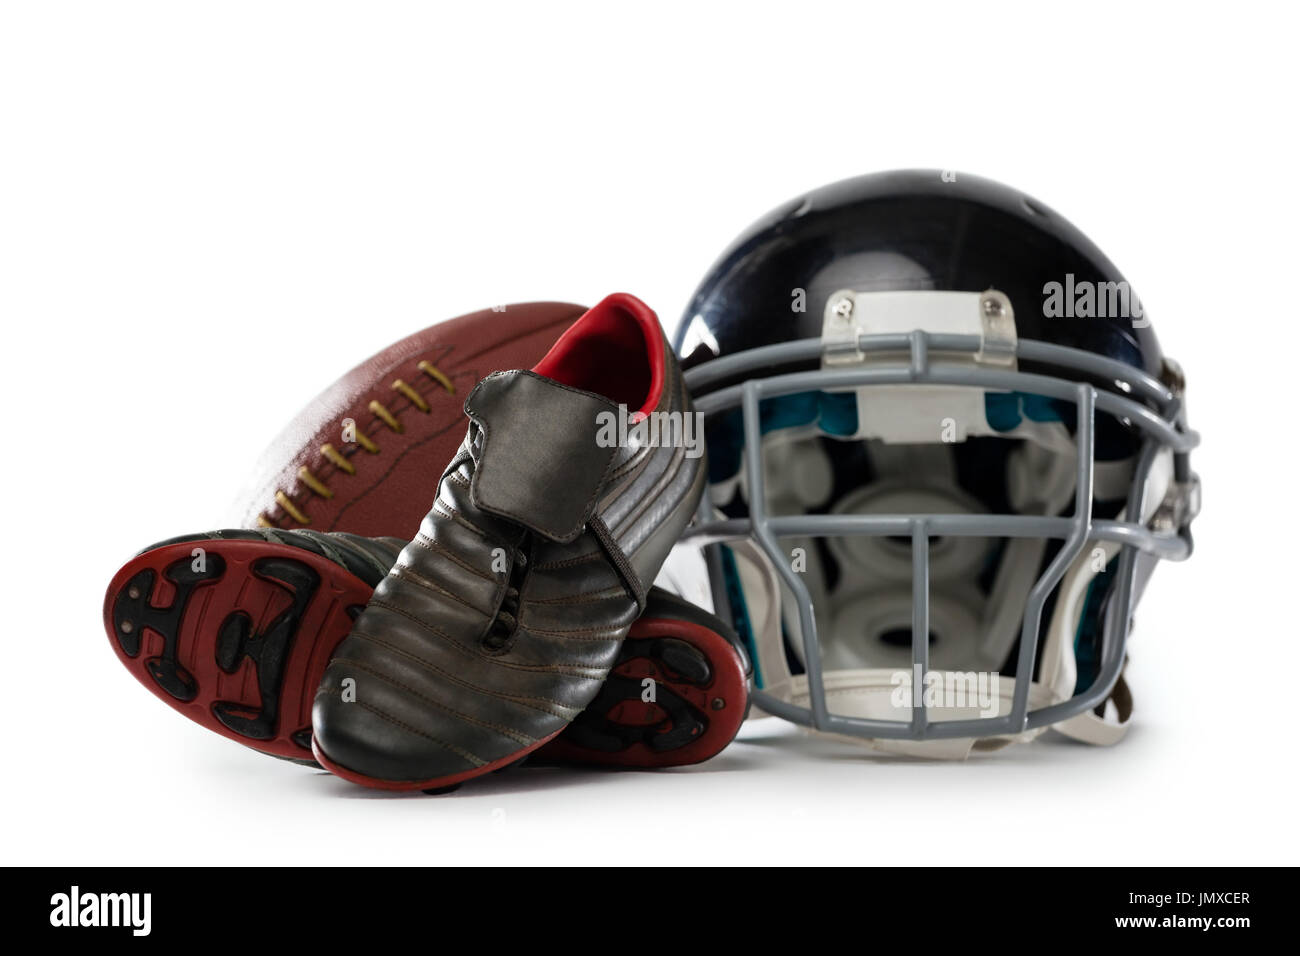 Cerca de zapatos deportivos con casco y fútbol americano contra el fondo blanco Fotografía de - Alamy